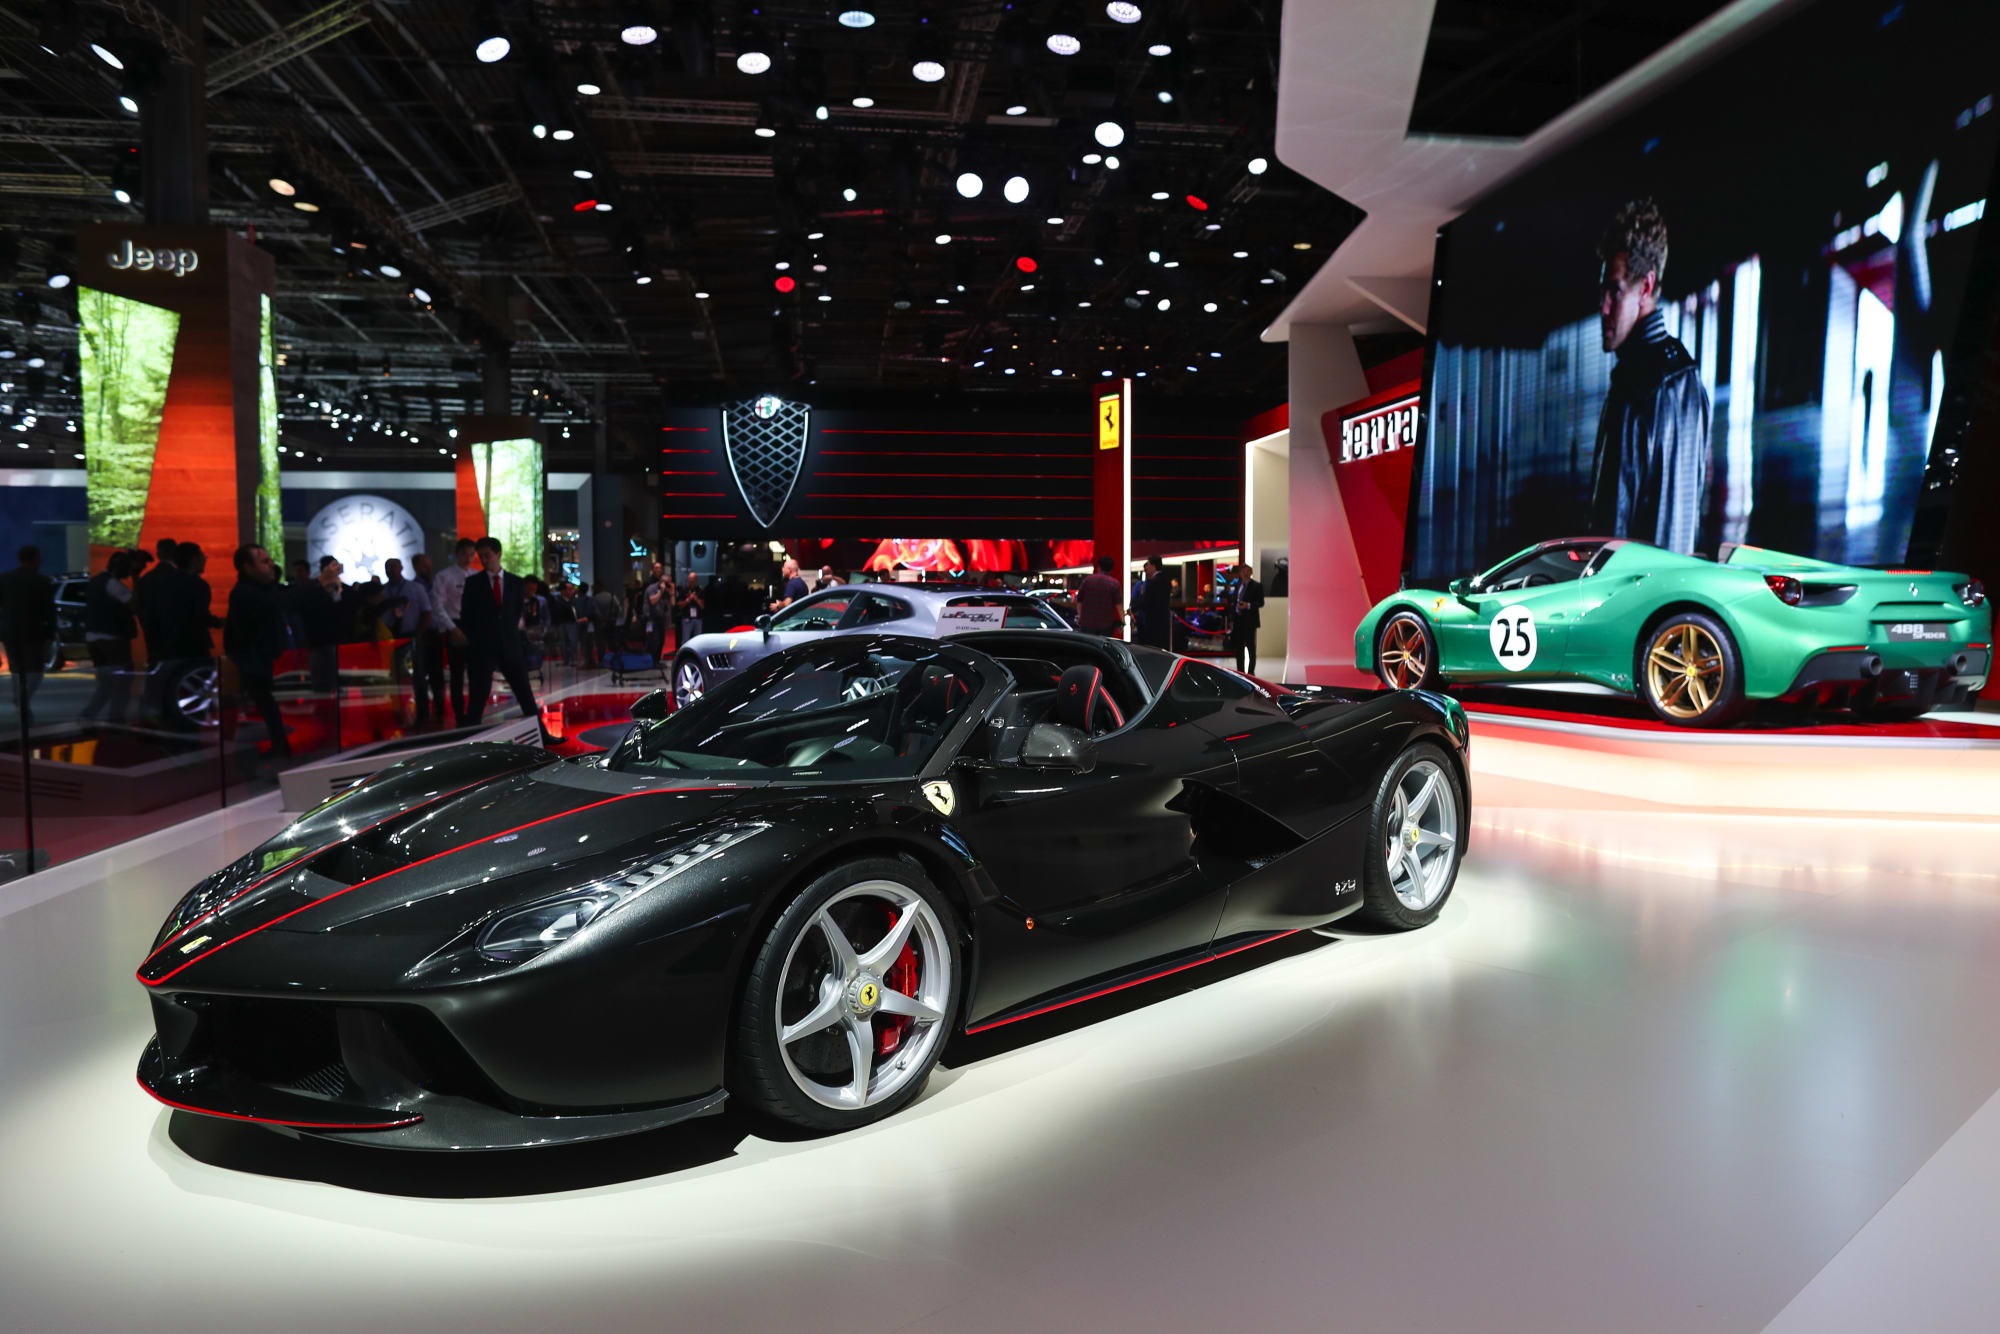 Ferrari Laferrari Aperta For Sale In Dubai With 73 Million Price Tag